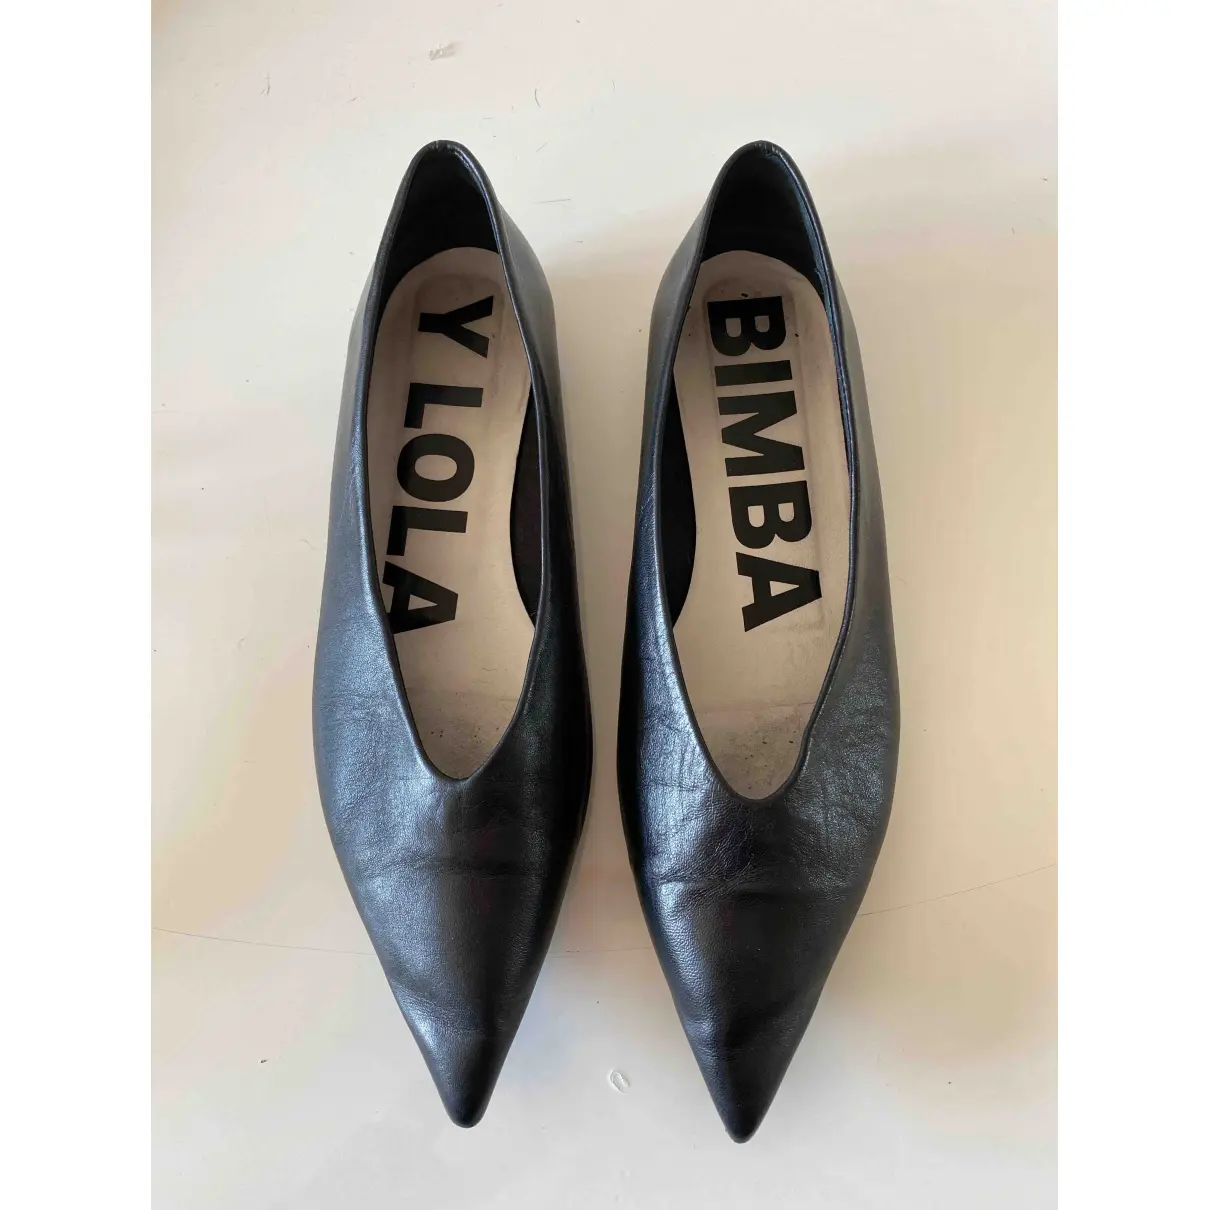 Buy Bimba y Lola Leather flats online